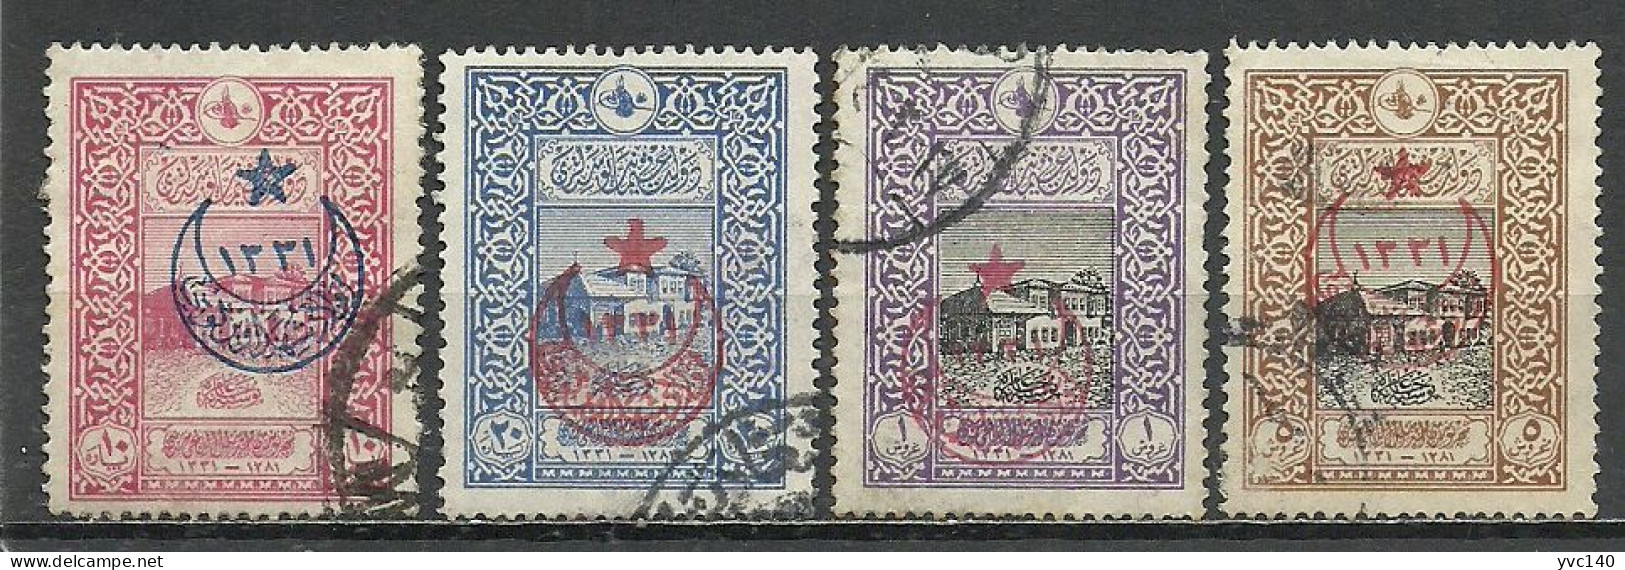 Turkey; 1916 Overprinted War Issue Stamps (Complete Set) - Oblitérés